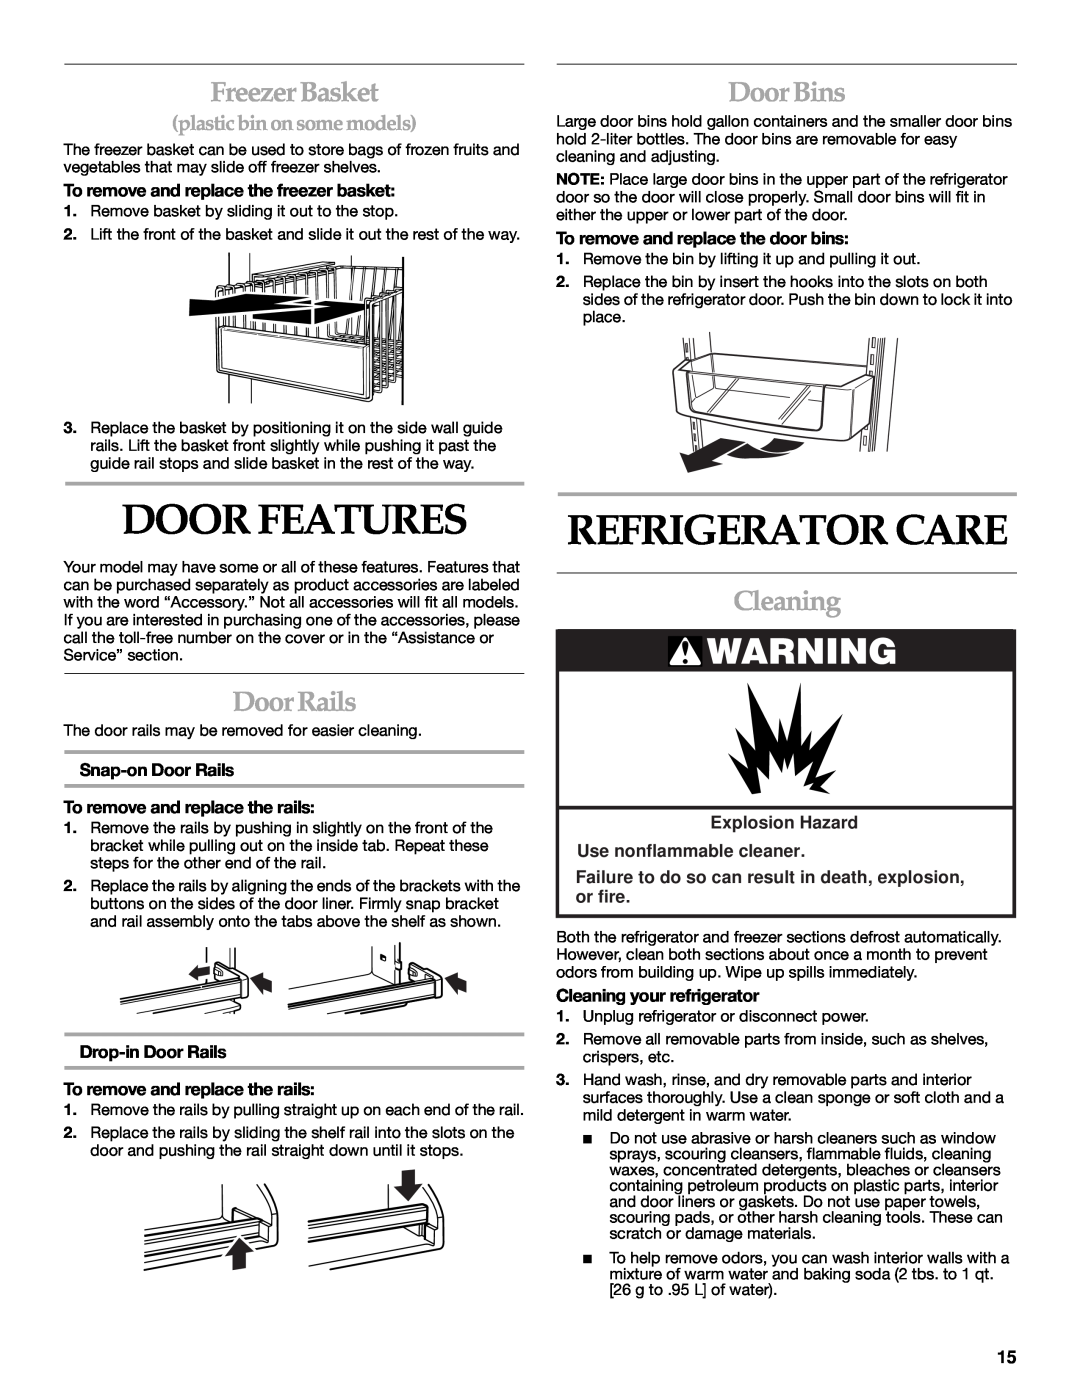 Whirlpool WF-NL500, WF-NL300 manual Door Features, Refrigerator Care, Freezer Basket, Door Bins, Door Rails, Cleaning 